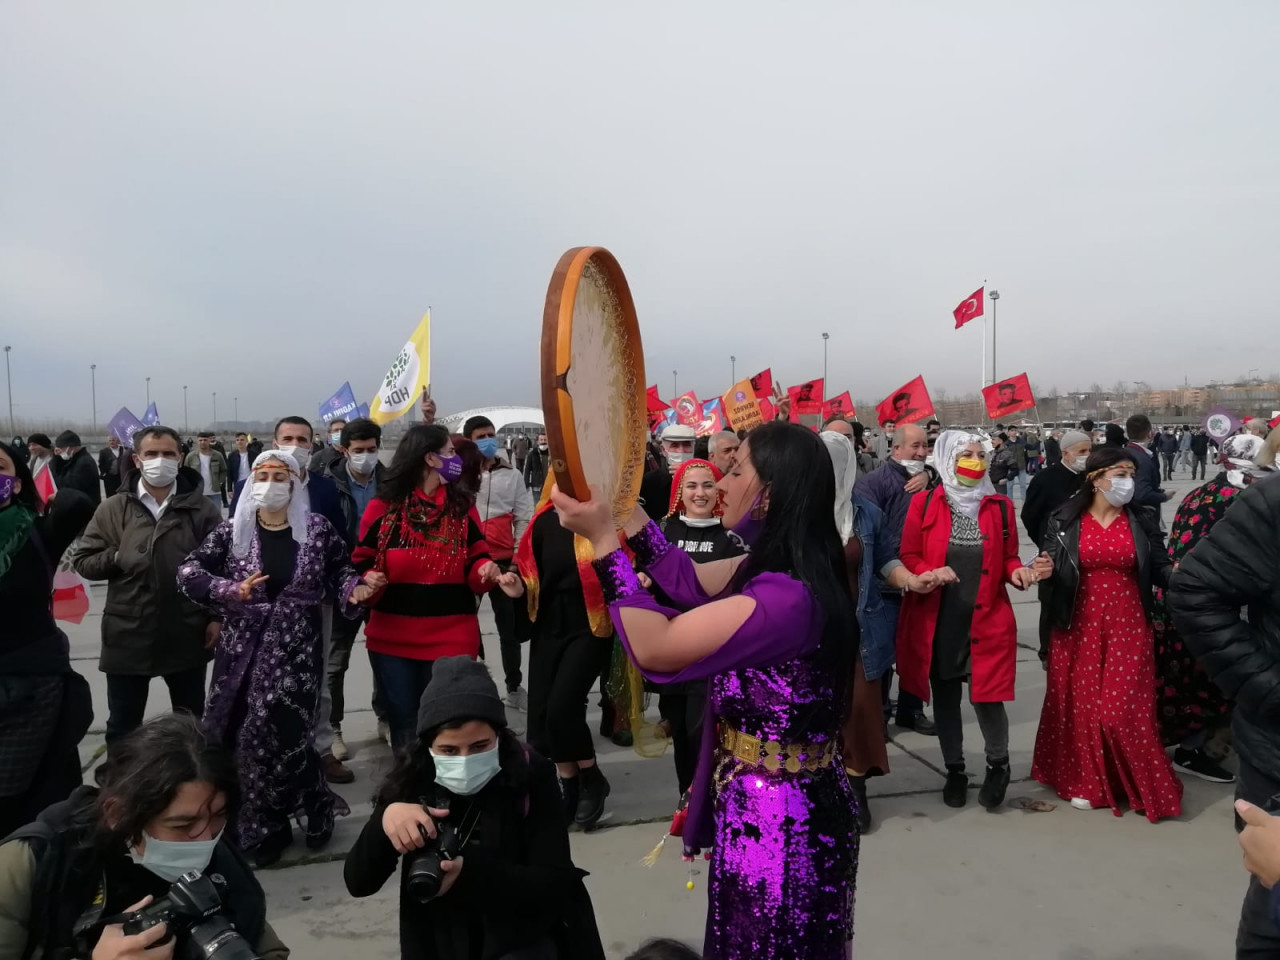 Newroz kutlamasında konuşan Pervin Buldan: "Onların kapatma davası varsa bizlerin de adalet ve demokrasi davamız vardır"